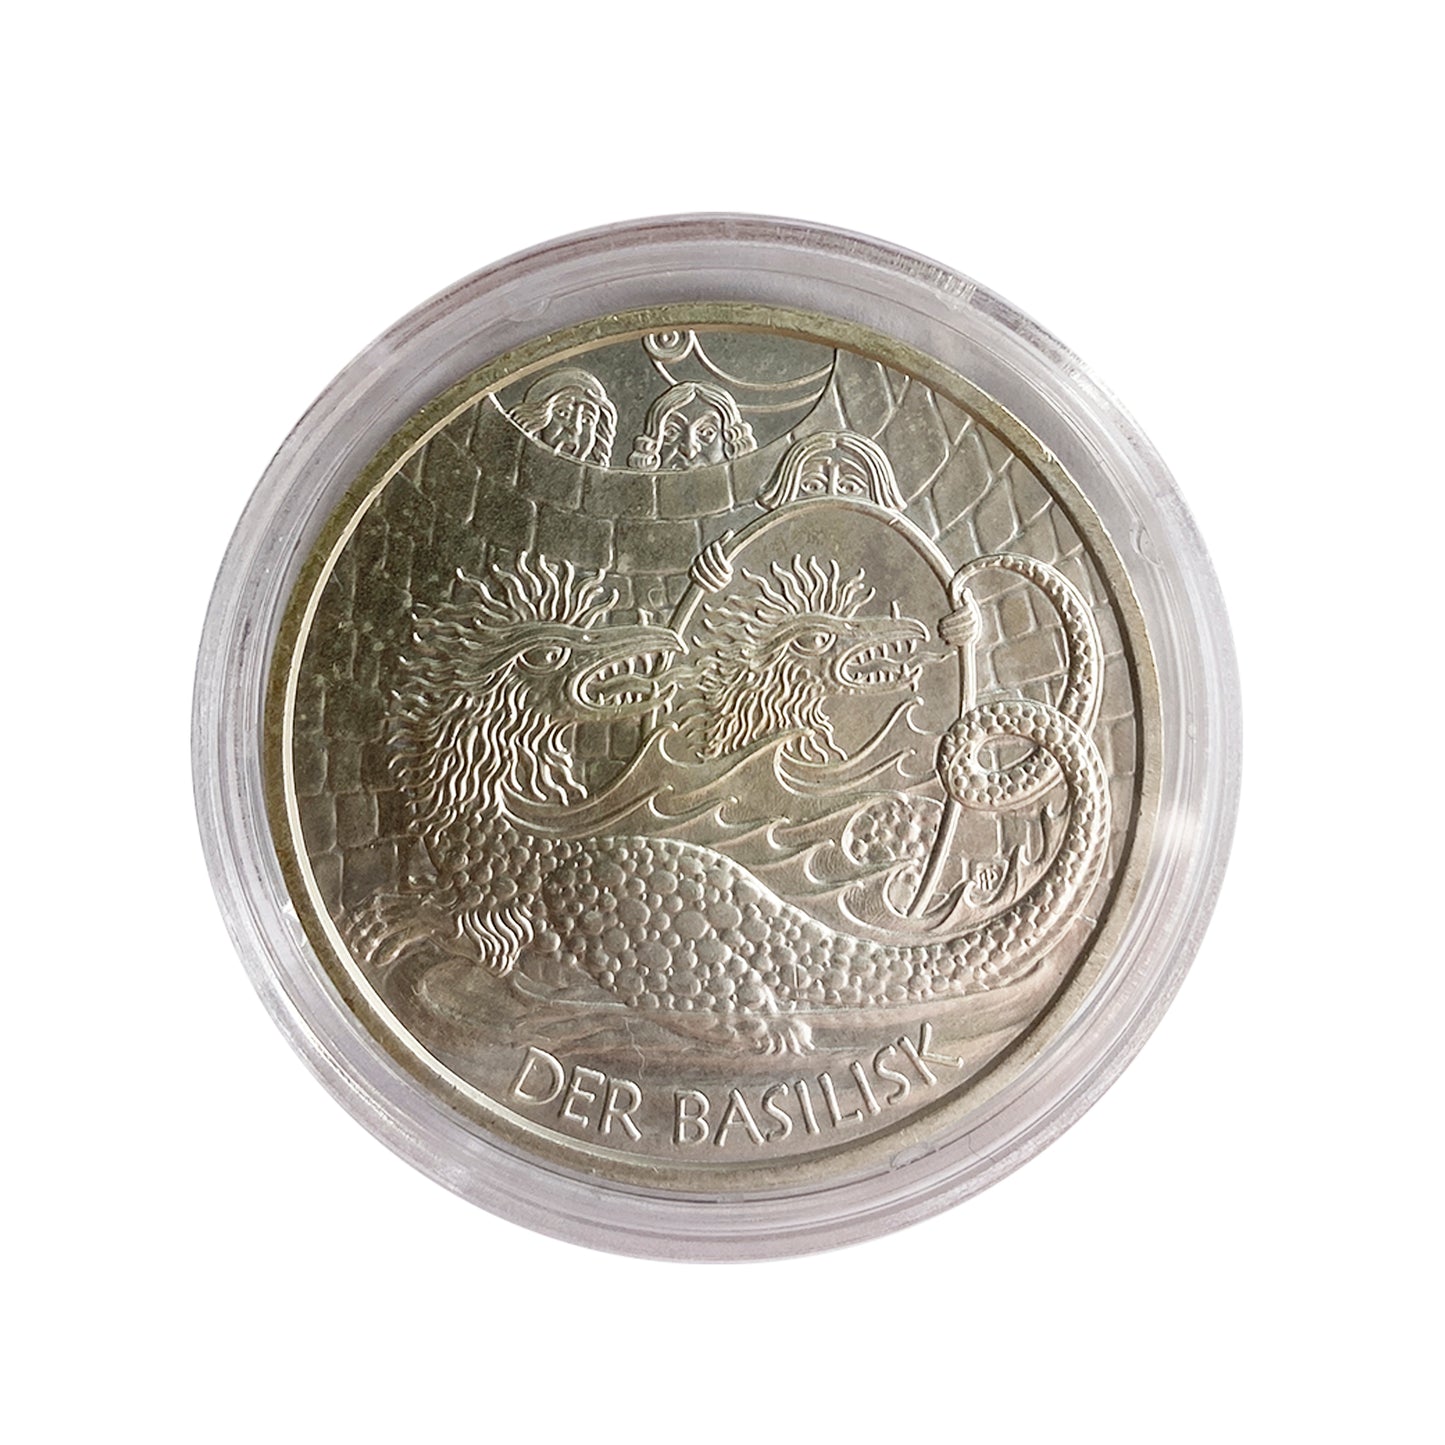 Austria - Moneda 10 euros plata 2009 - El Basilisco de Viena